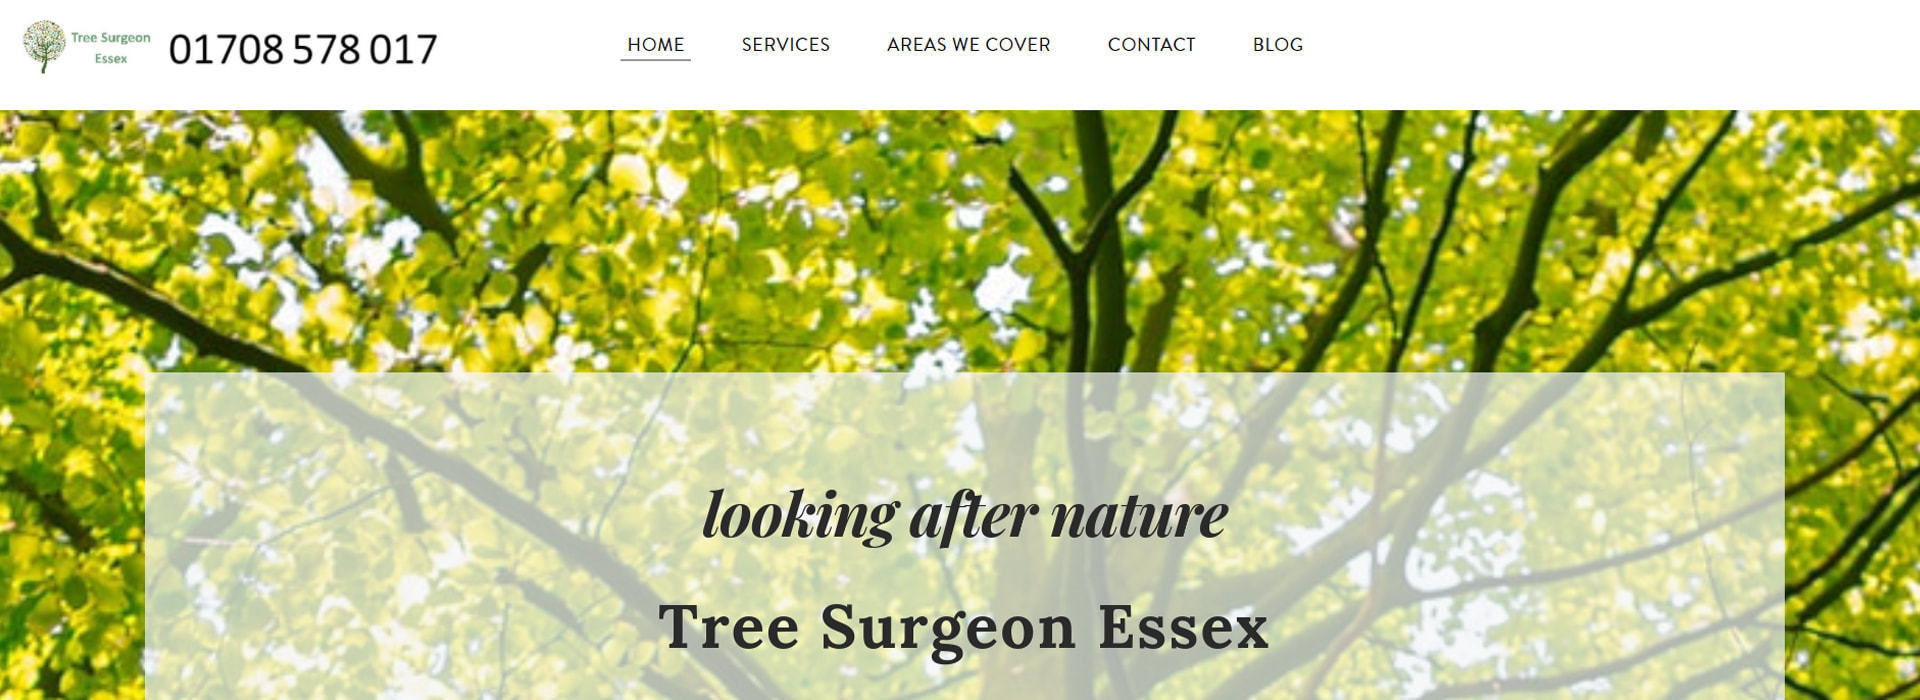 Tree Surgeon Essex